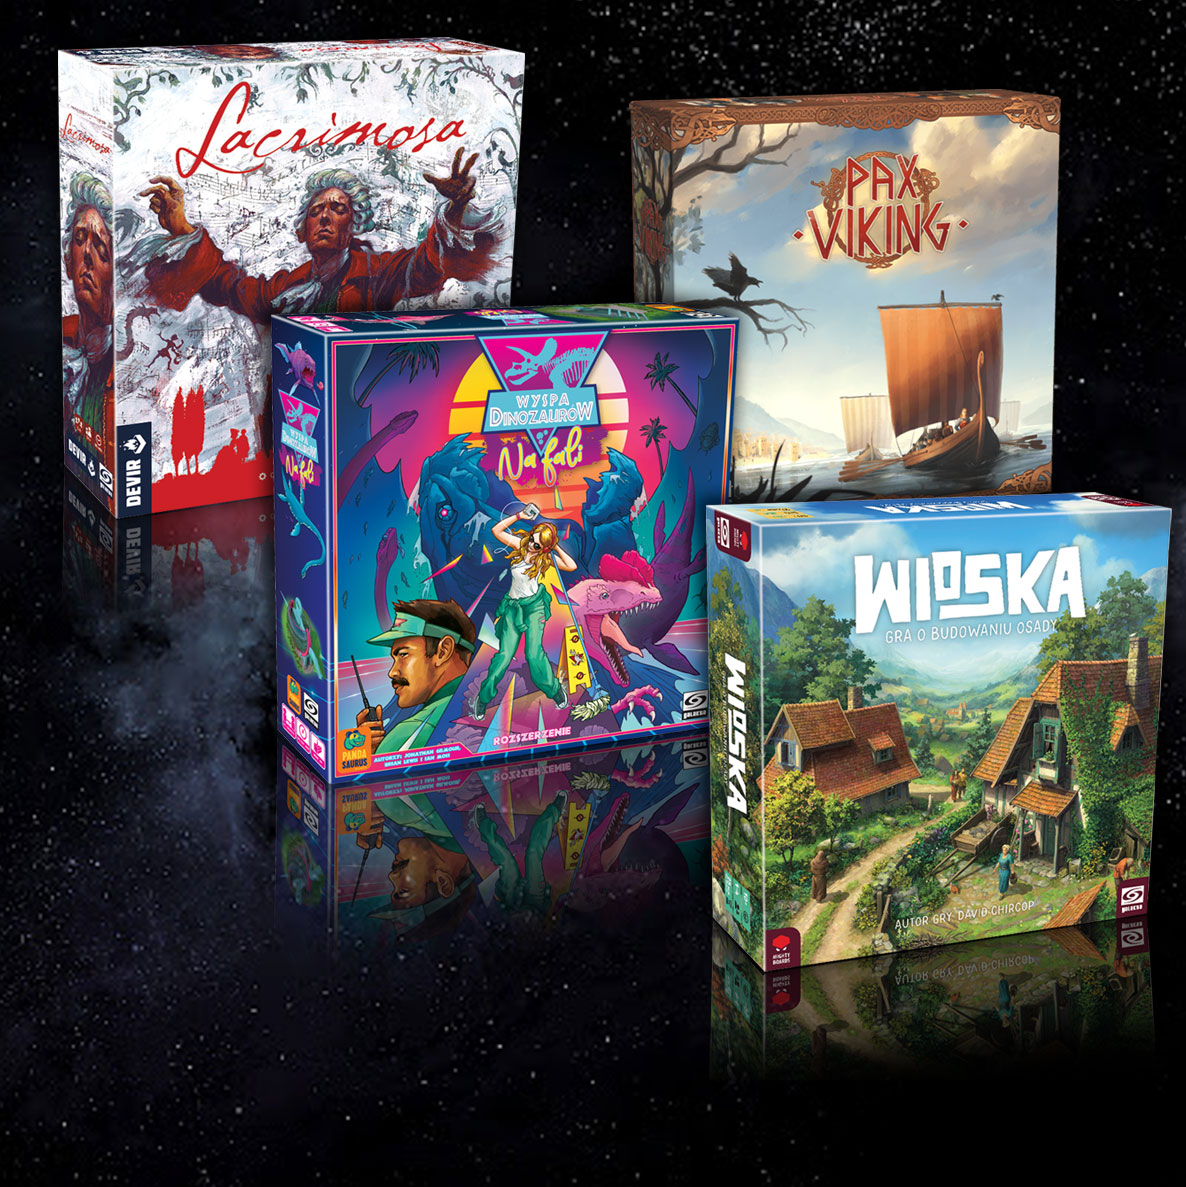 cztery pudełka gier wydawnictwa Galakta, Lacrimosa, Pax Viking, Wioska Gra o budowaniu wioski, Wyspa Dinizaurów Na Fali, przedsprzedaże